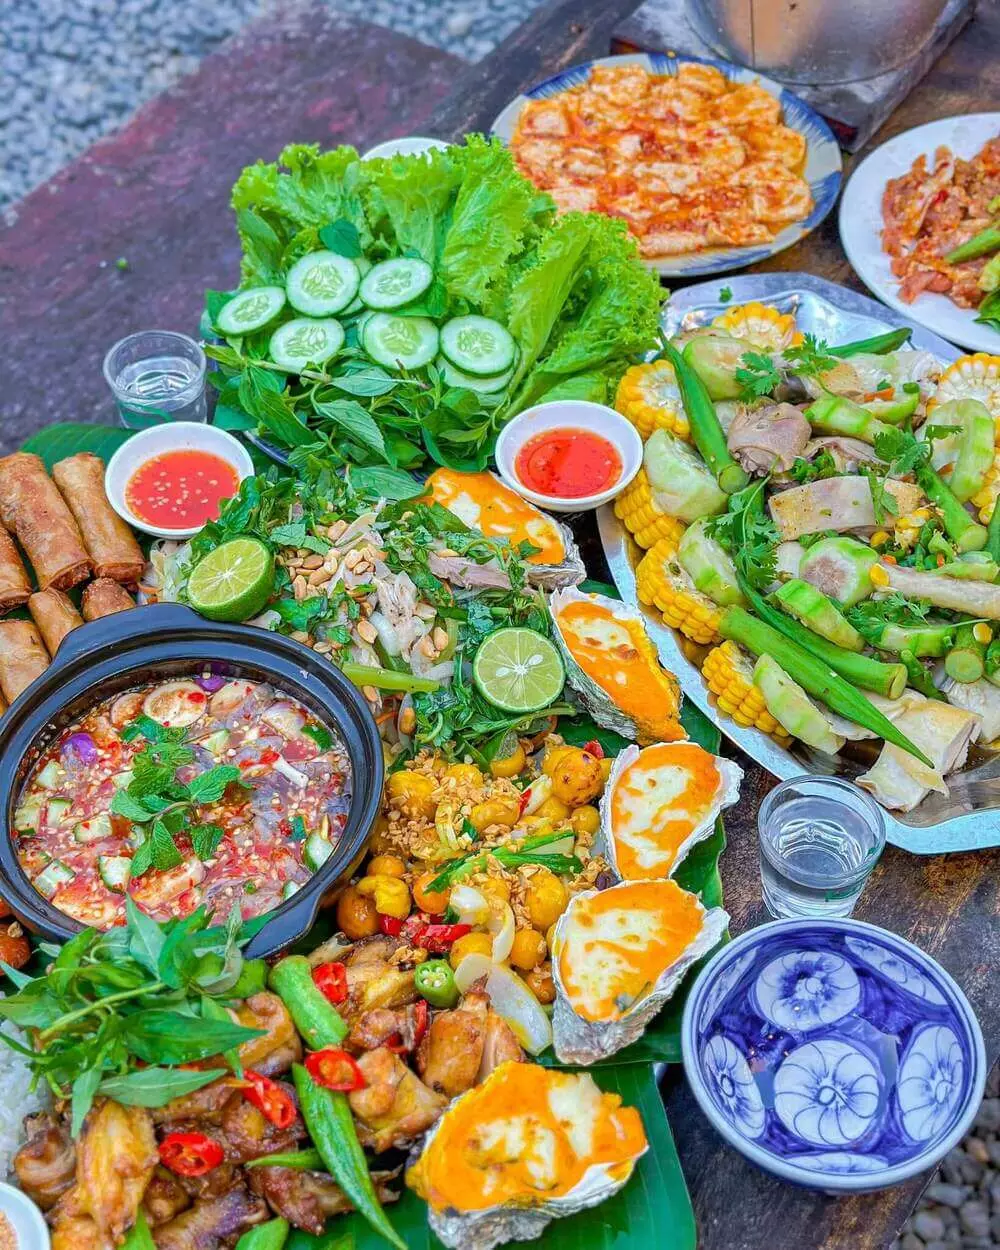 Quán ăn ngon rẻ cho gia đình ở Nha Trang